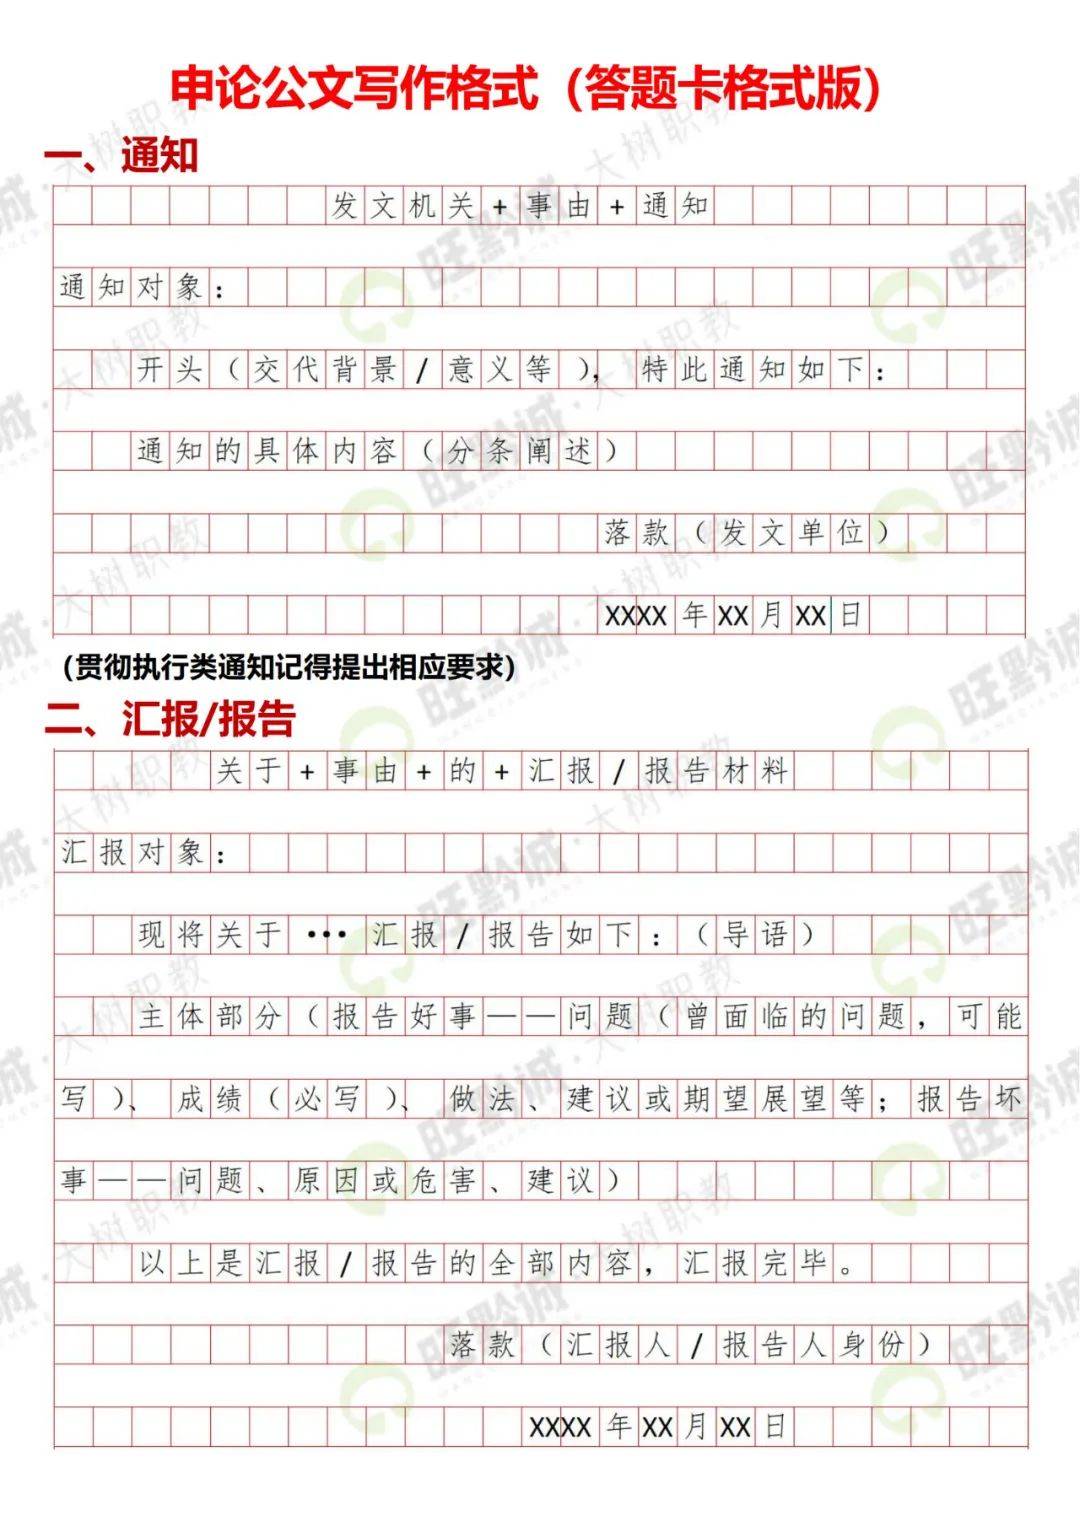 贵州省考申论公文写作格式!答题卡版!